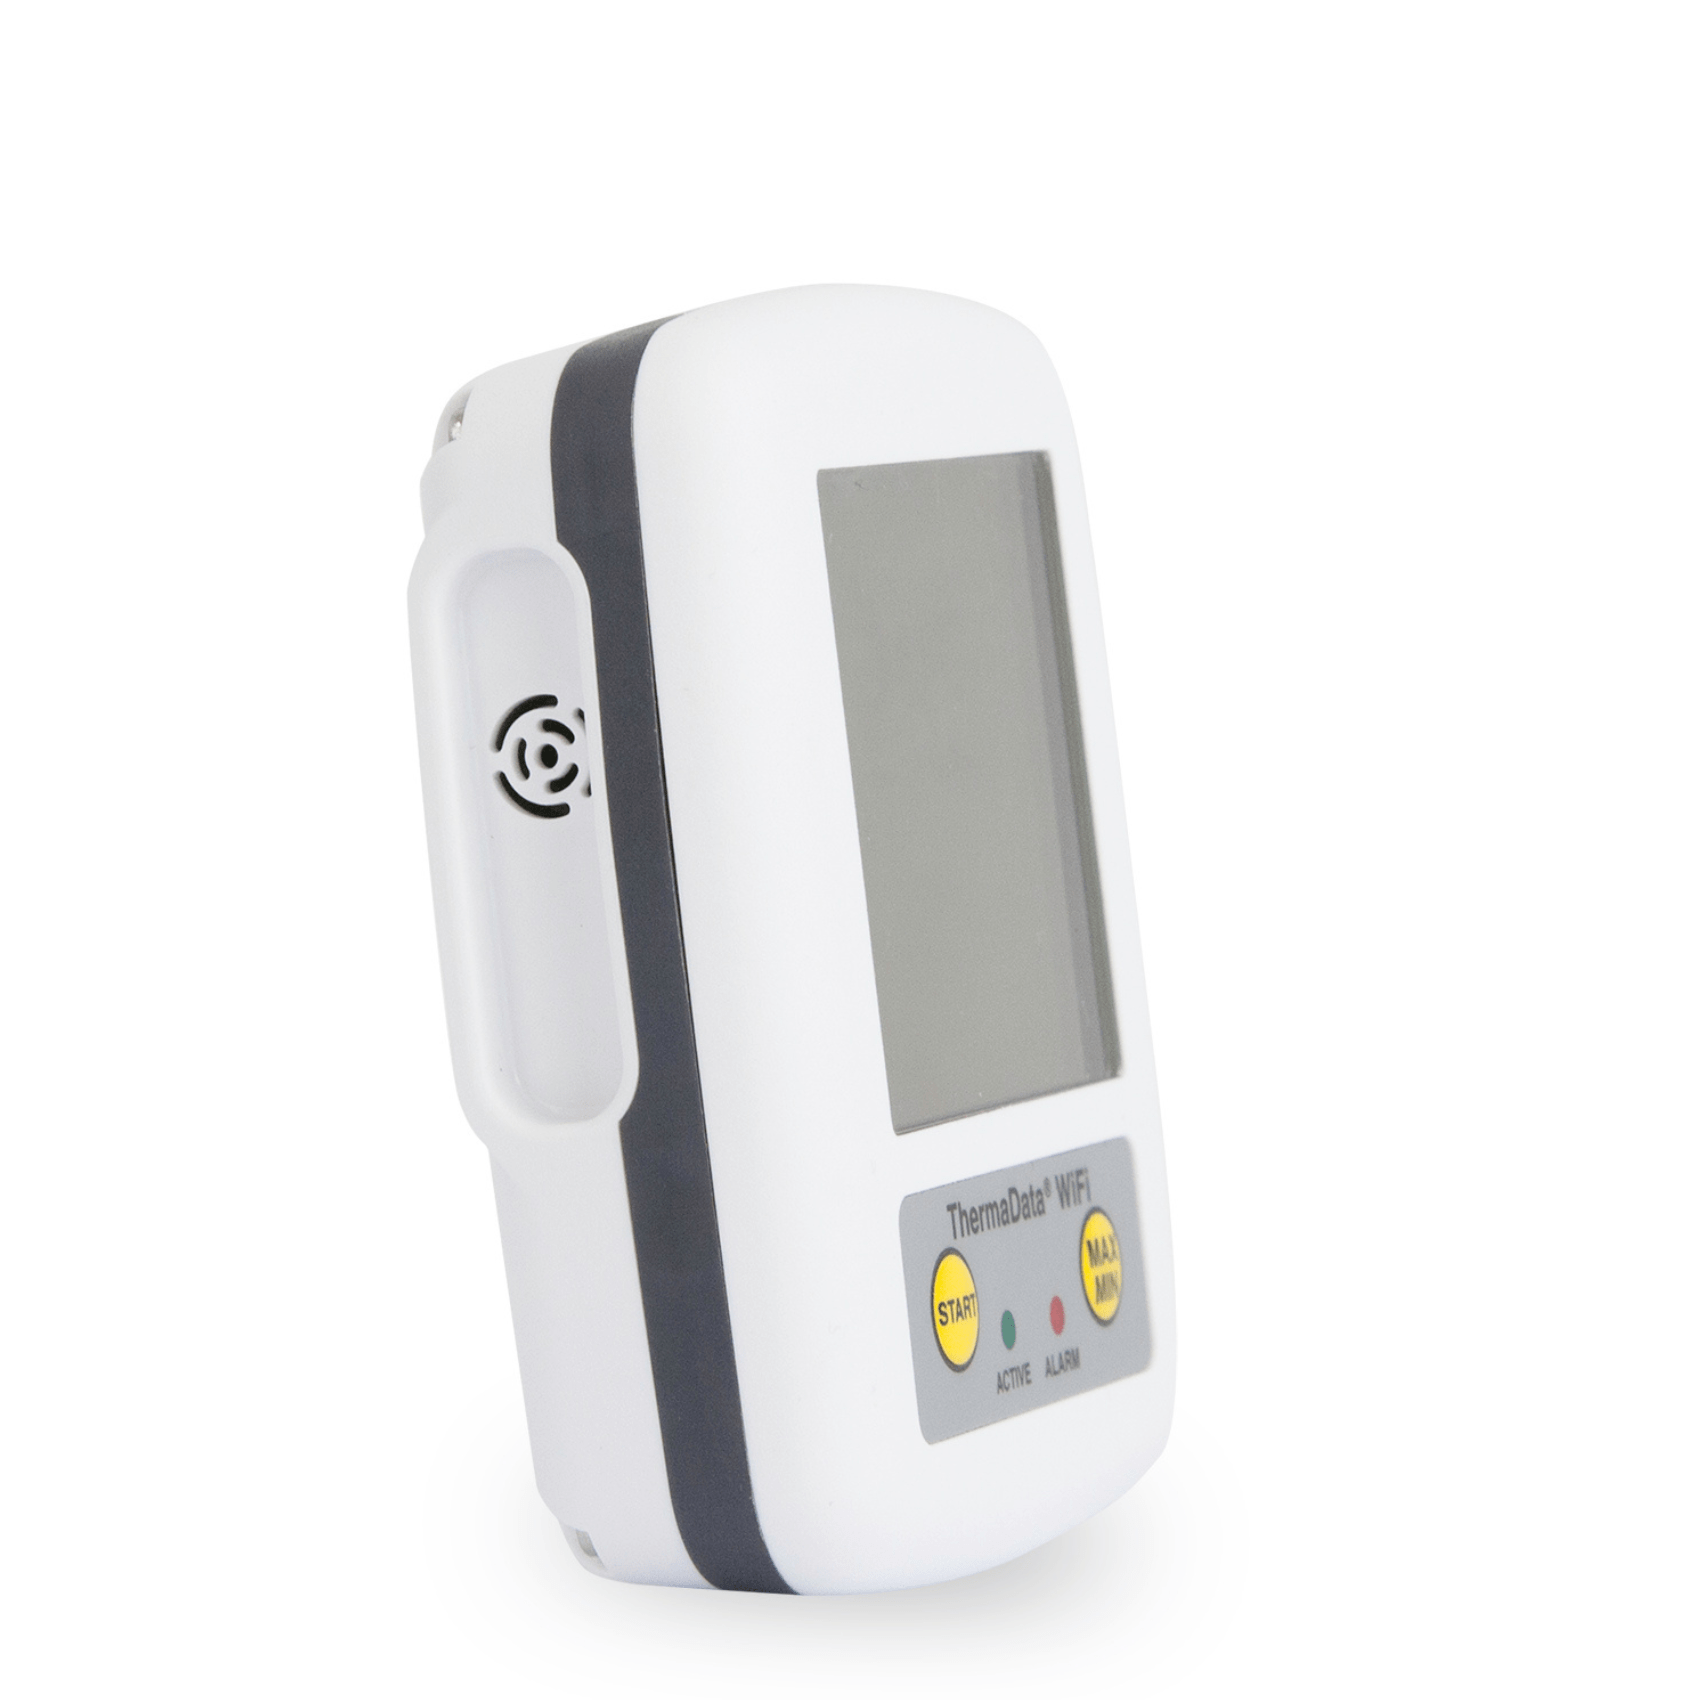 un Thermomètre enregistreur WiFi sans fil avec capteur interne de Thermometre.fr sur fond blanc.